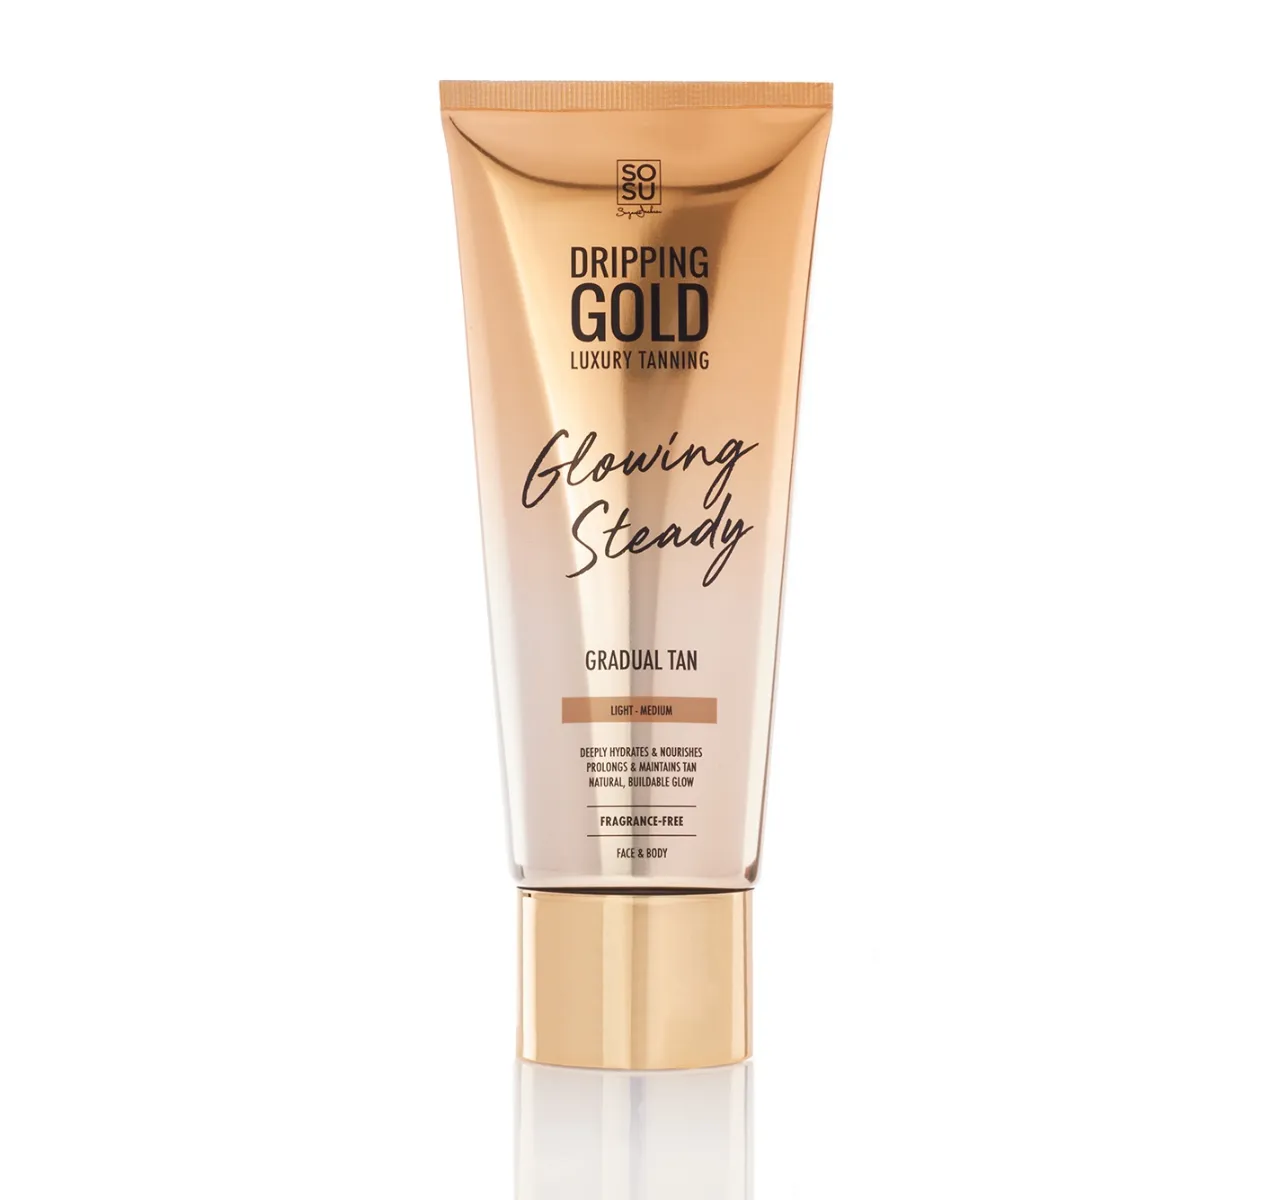 SOSU Dripping Gold Glowing Steady samoopalovací krém Gradual Tan light, medium 200 ml